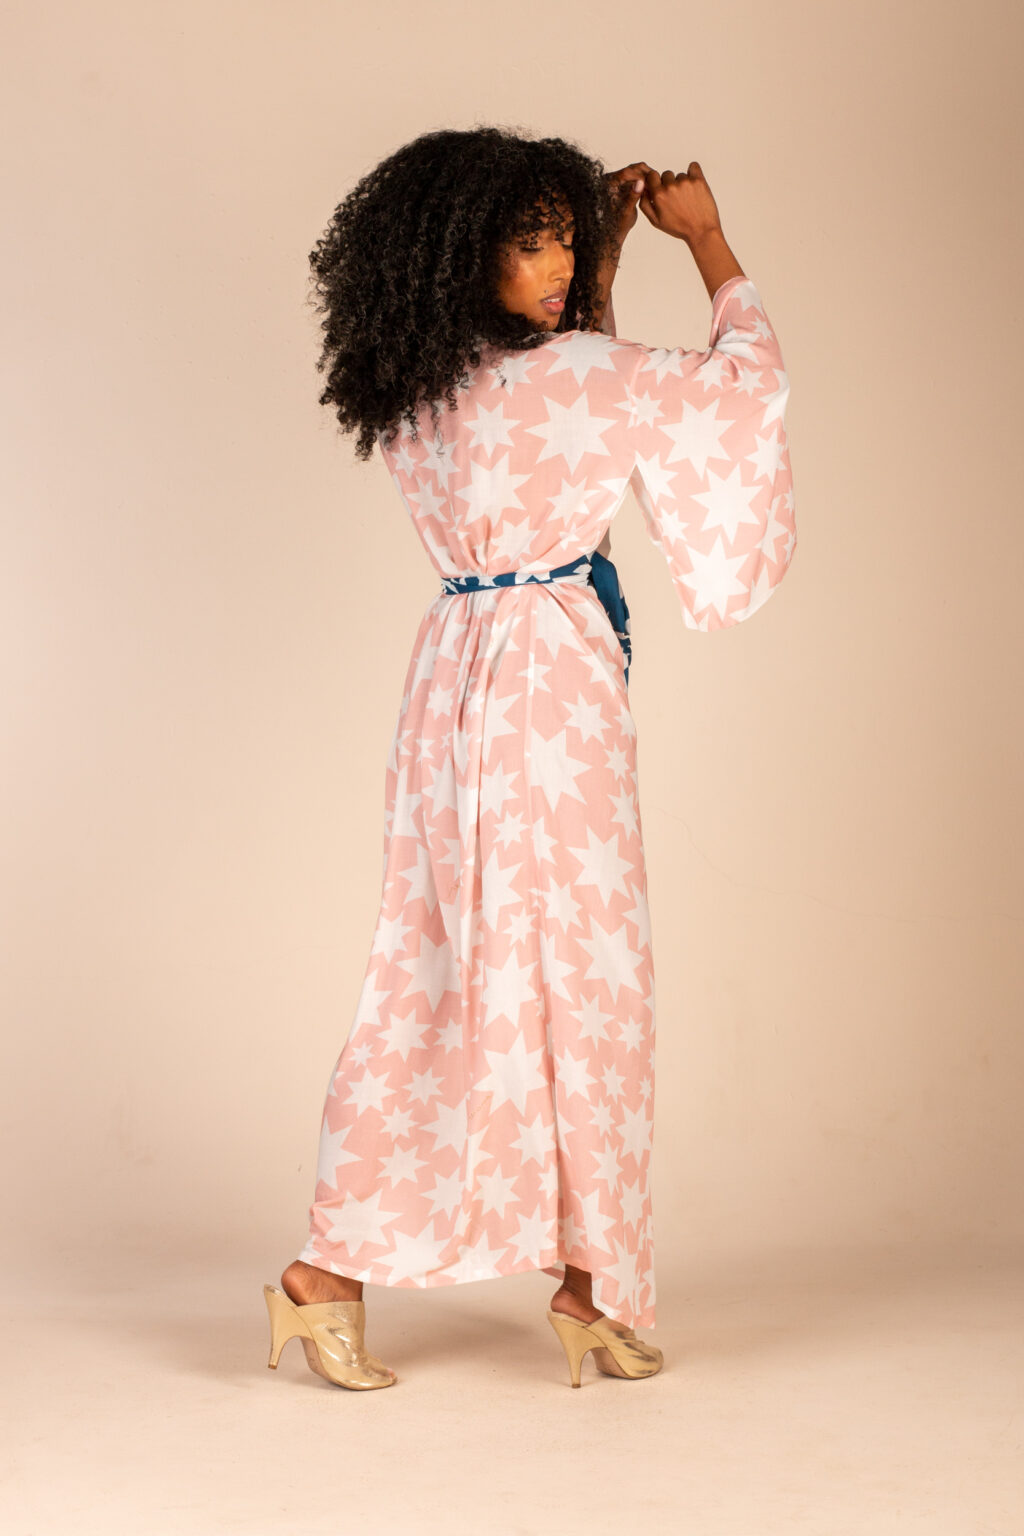 Mulher morena usando kimono longo manga longa faixa de amarração na cintura estampa exclusiva rosa com estrelas brancas conforto praticidade elegância kimono Miss Gion maria sanz kimono quimono